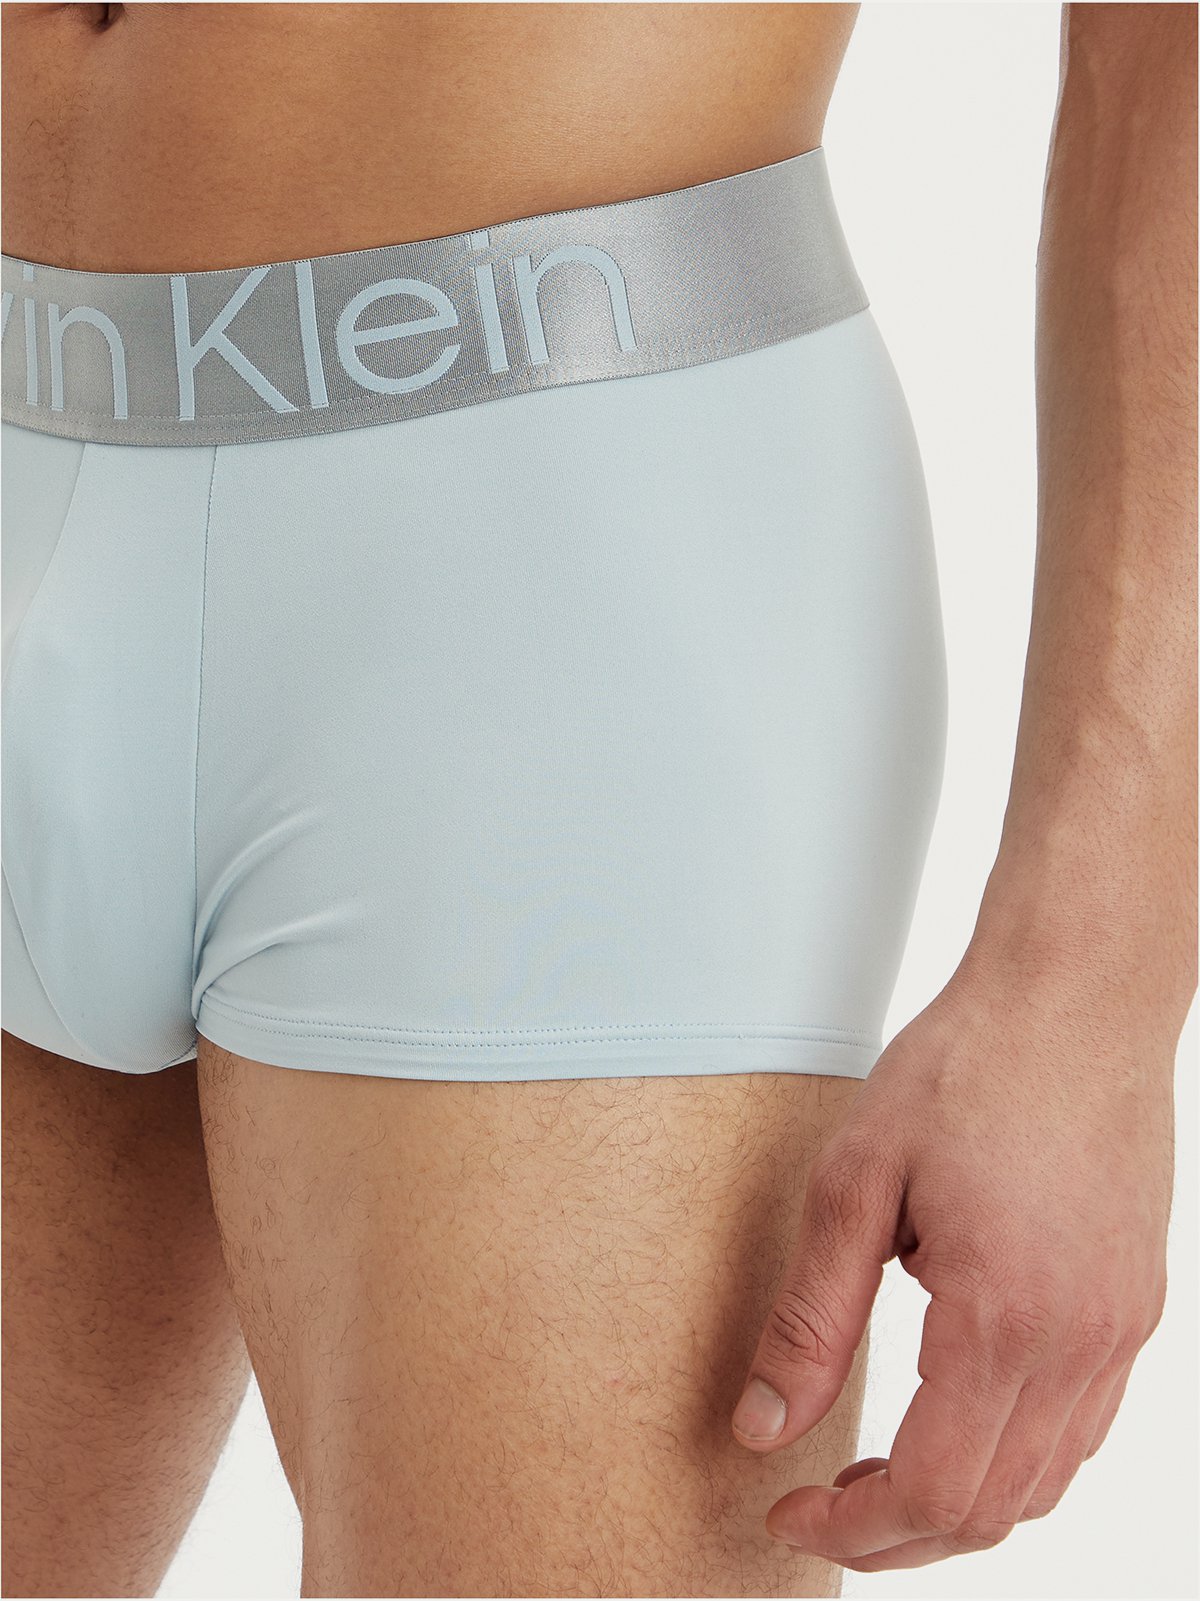  Calvin Klein Men's Underwear Compact Flex Micro Low